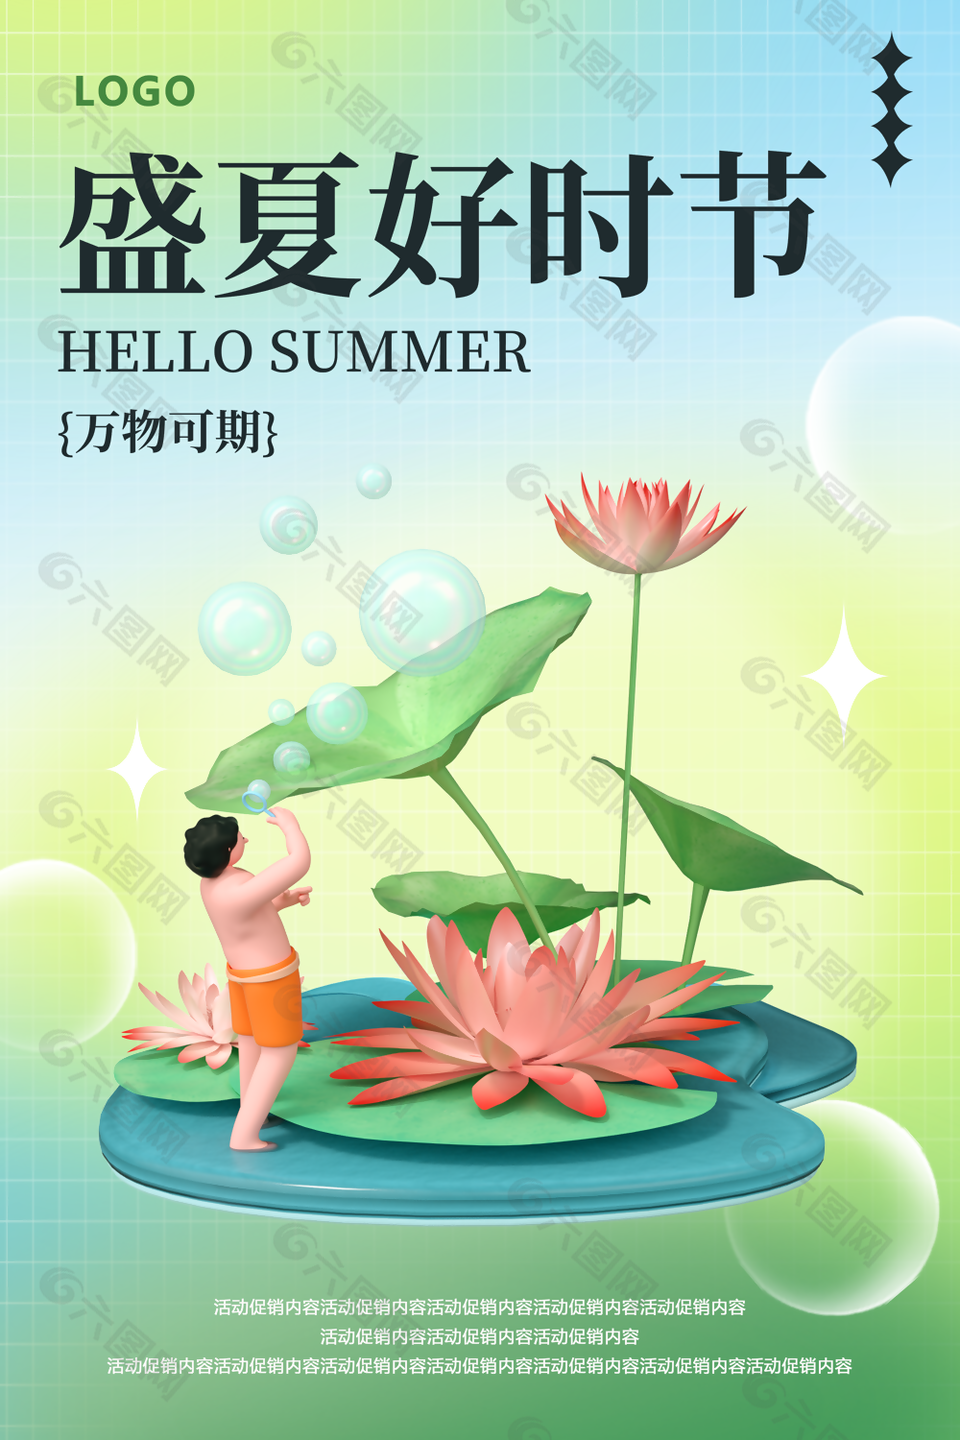 手绘中国风盛夏好时节海报素材设计